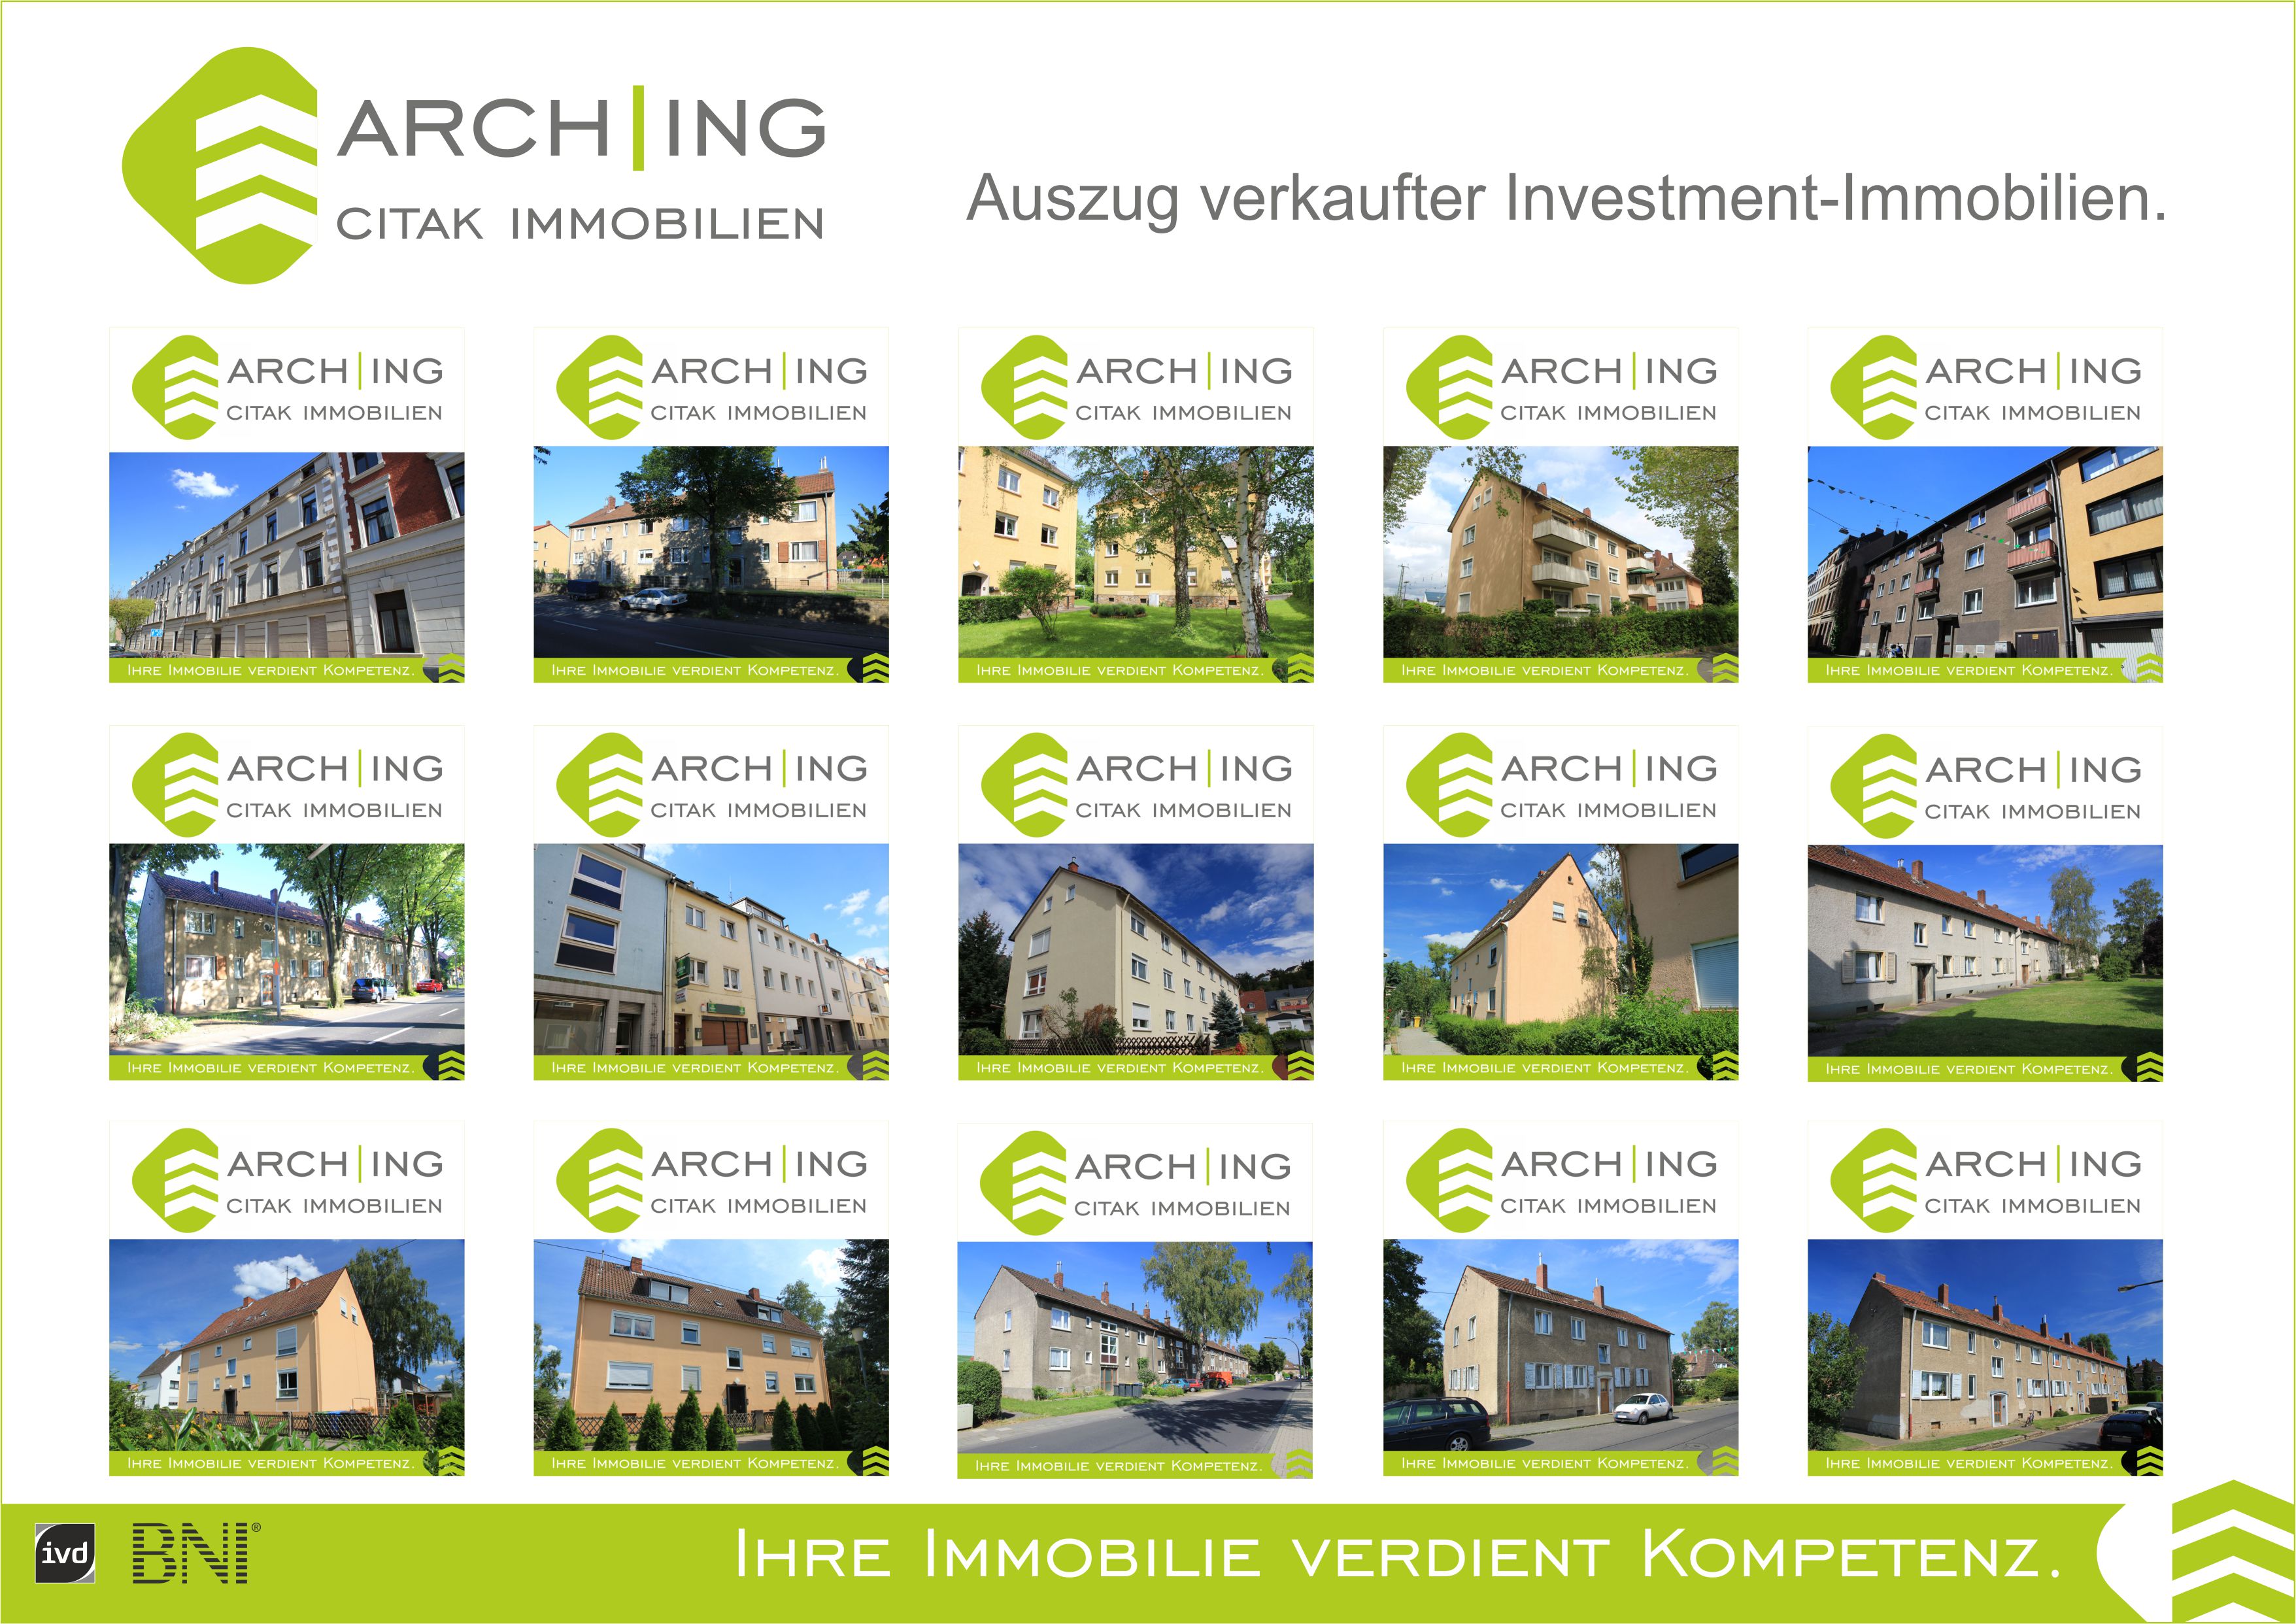 VERKAUFT - Auszug verkaufter Investment-Immobilien - ARCH-ING Citak Immobilien IVD.jpg